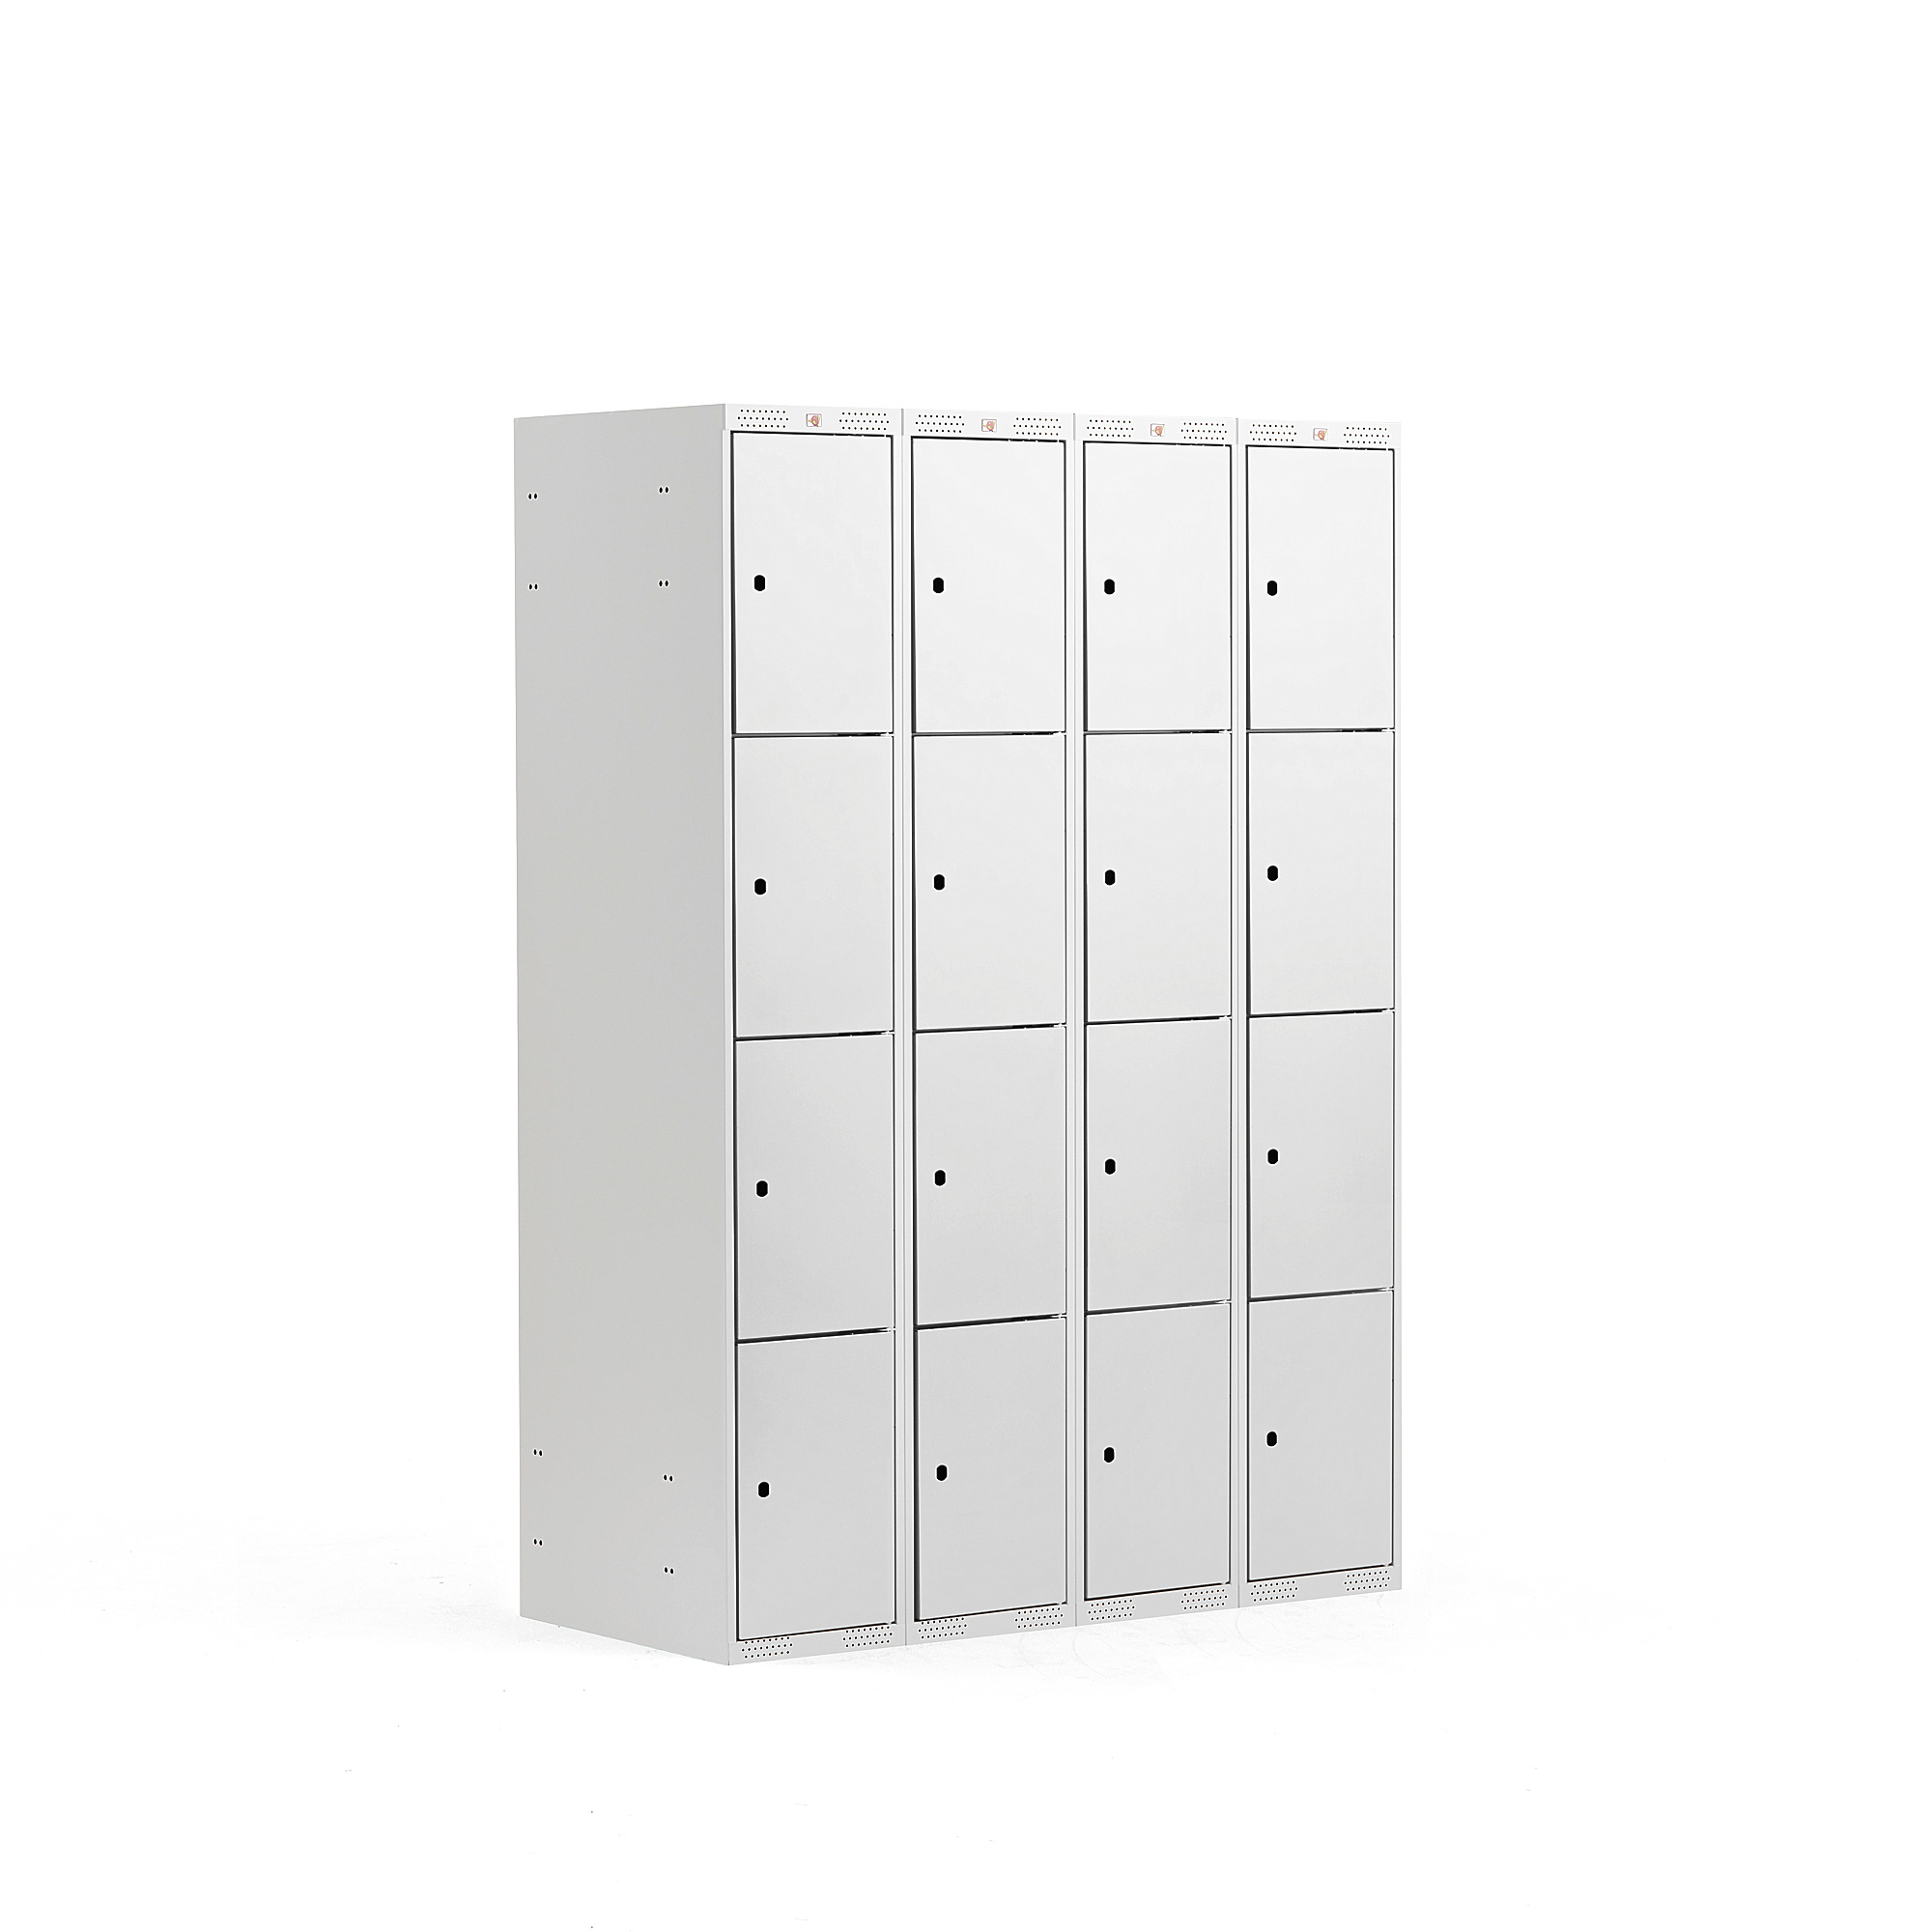 Boxová šatní skříň CLASSIC, 4 sekce, 16 boxů, 1740x1200x550 mm, šedá, šedé dveře